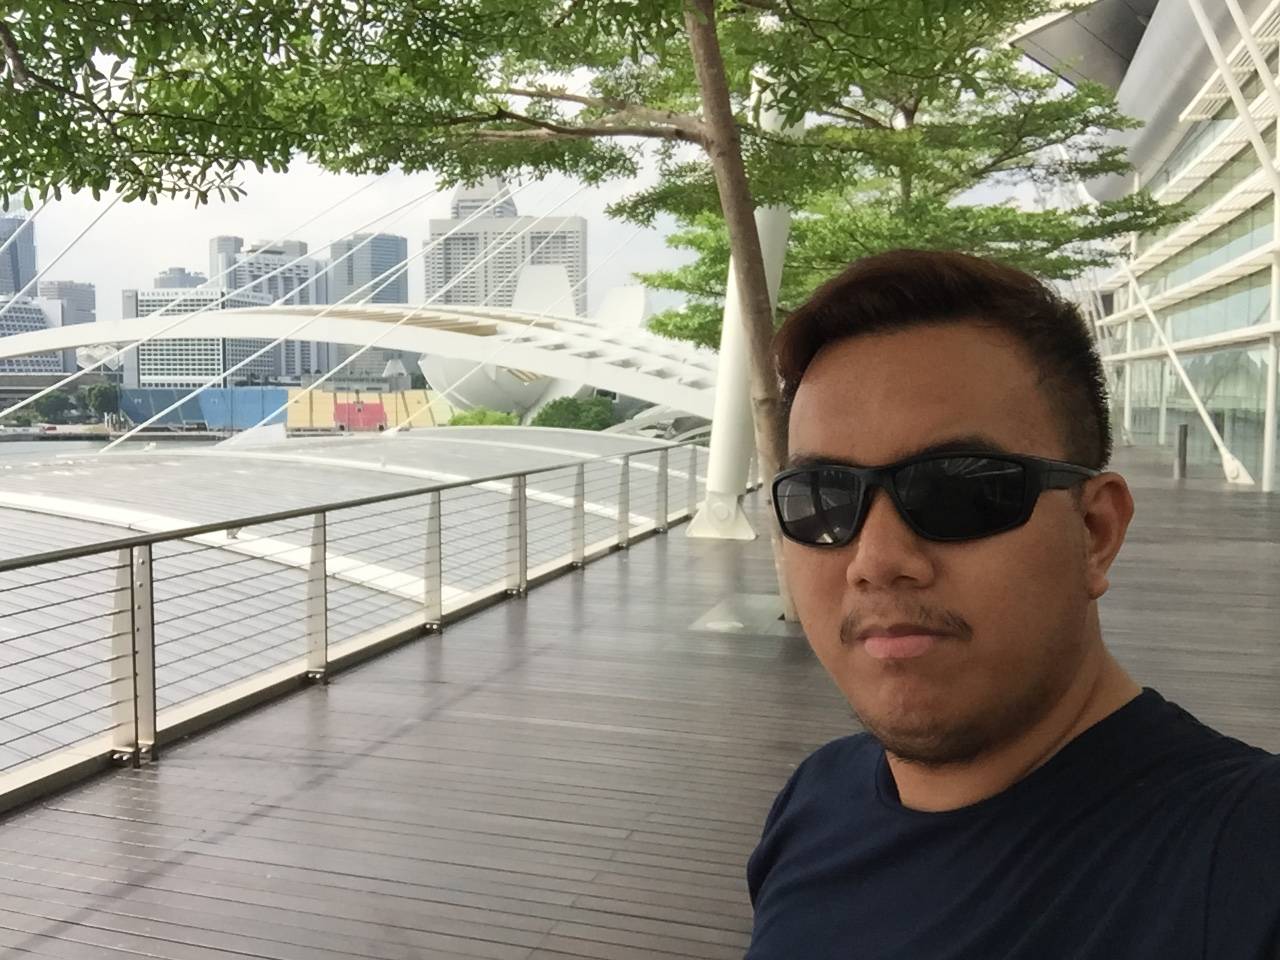 At the balcony of Marina Bay Sands’ upper floor